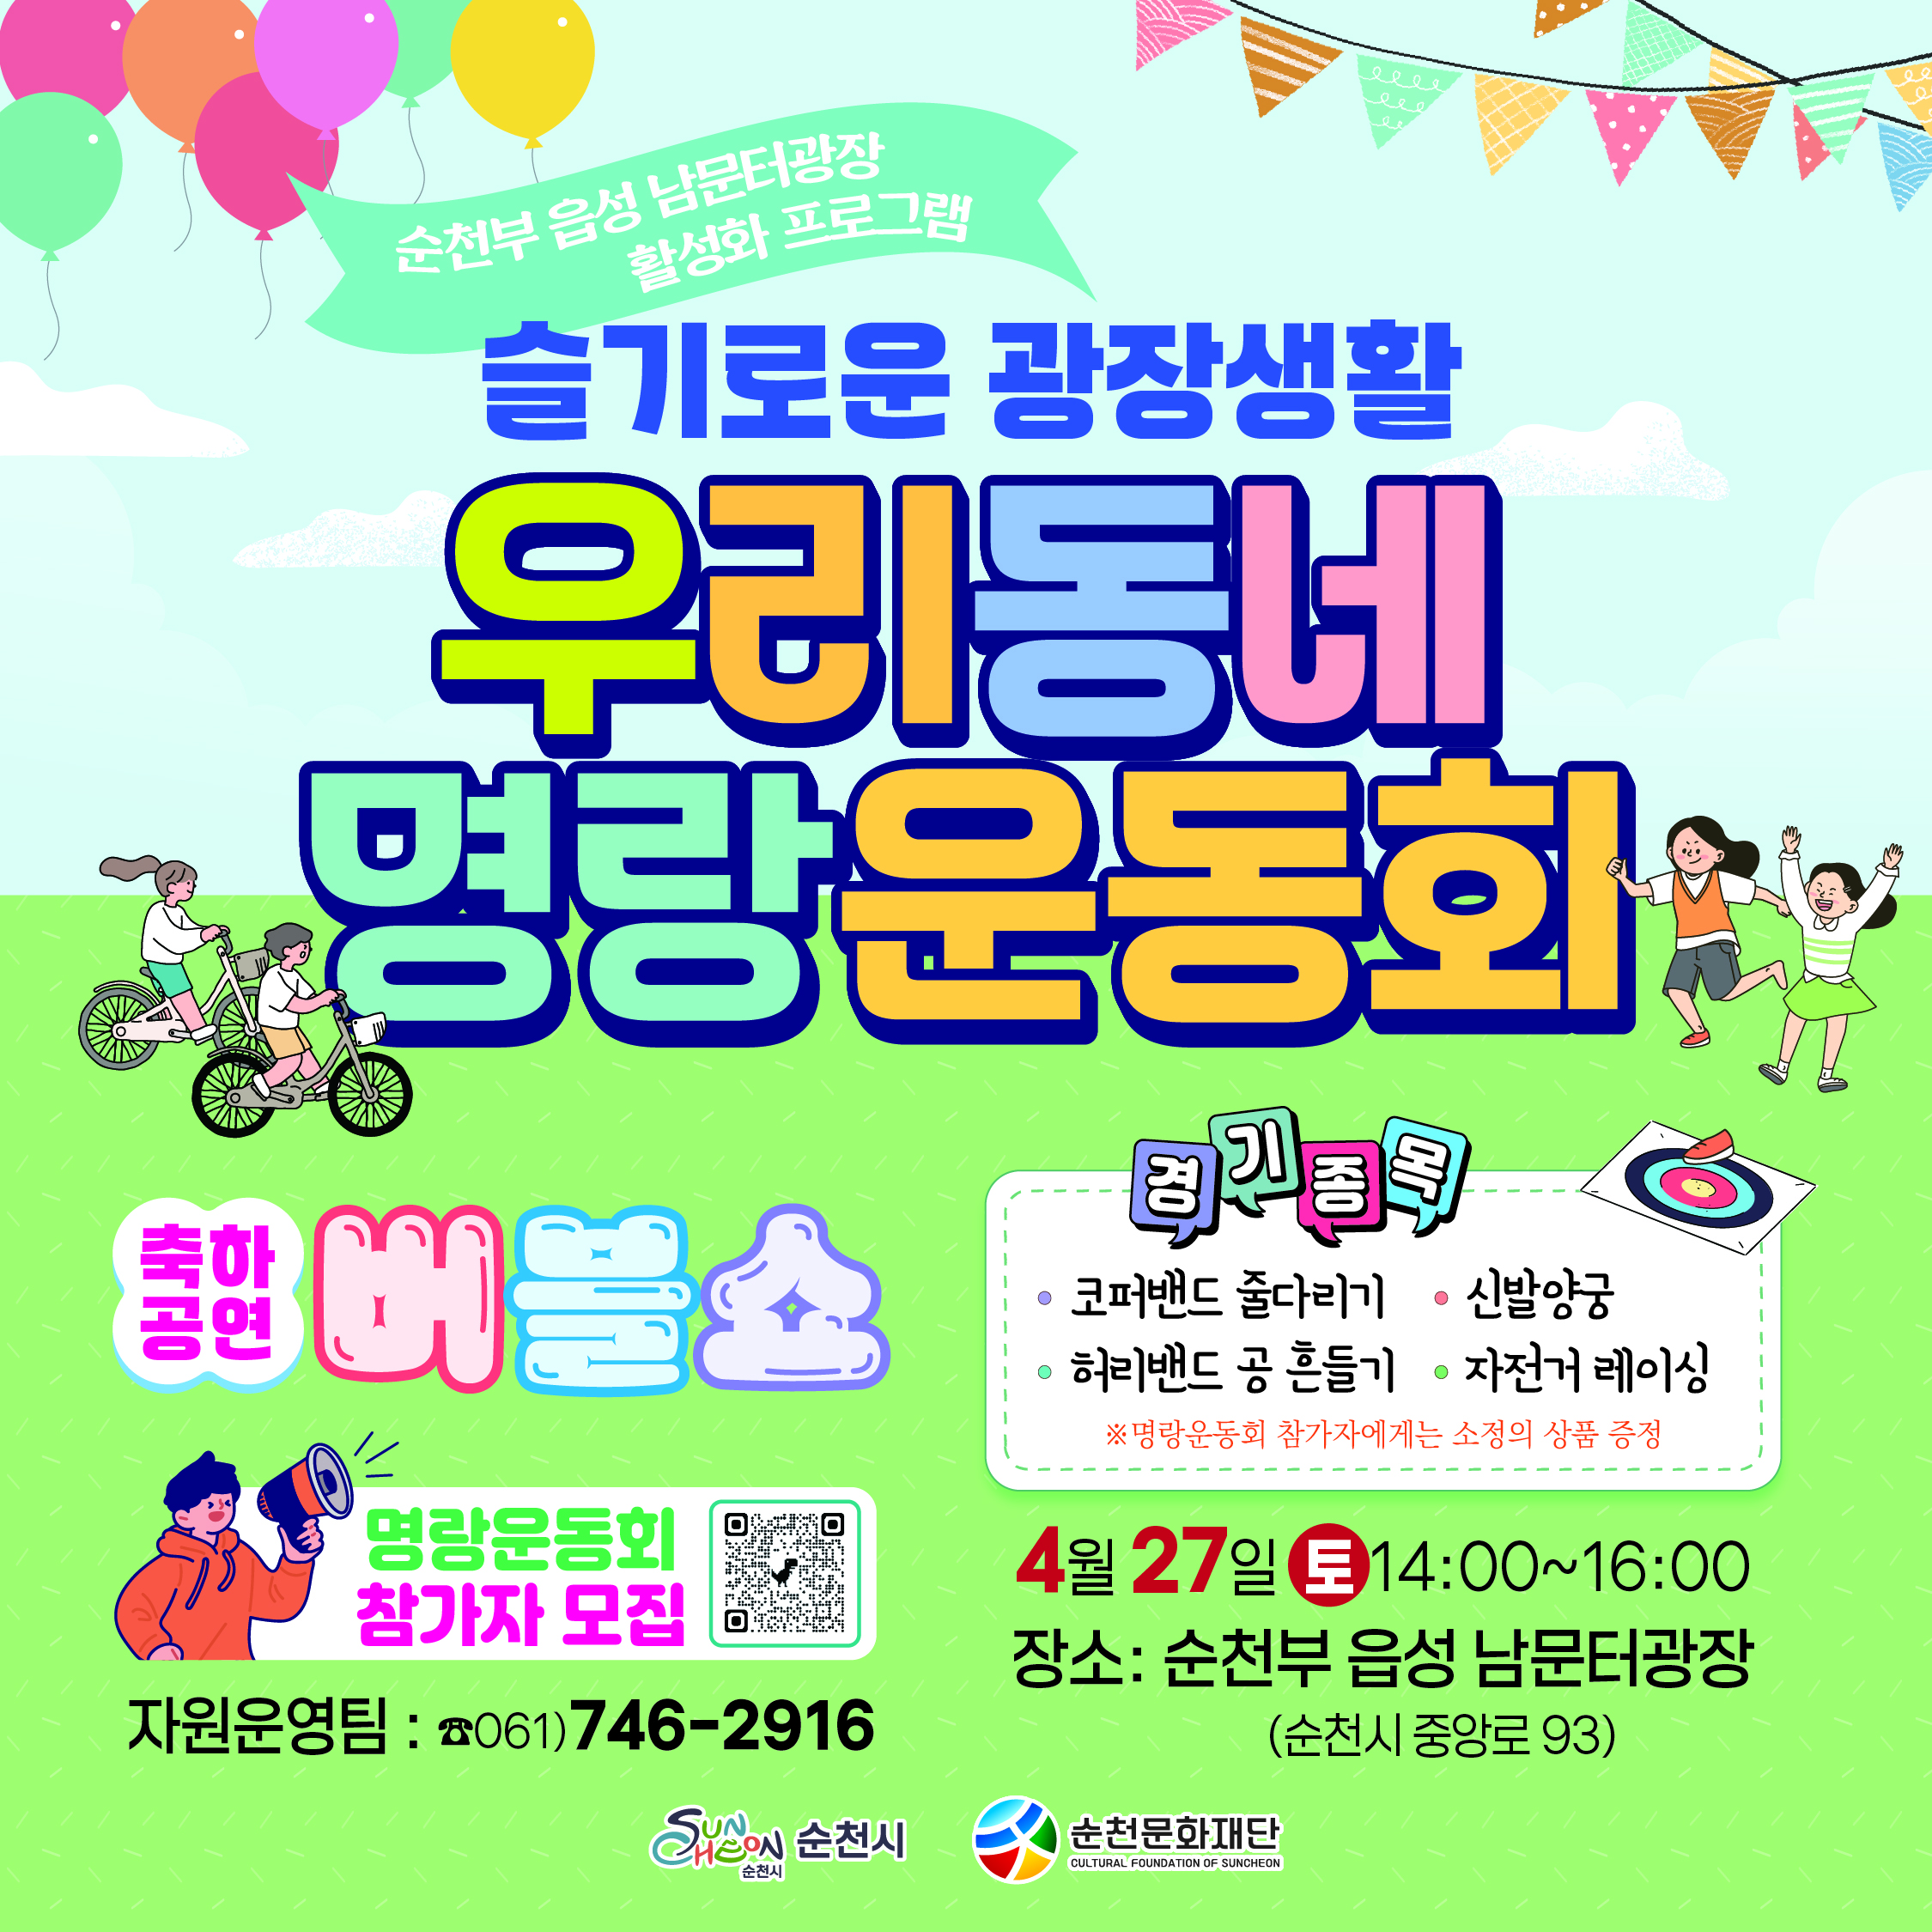 남문터 광장 활성화 프로그램 <우리동네 명랑운동회 1탄> 참가자 모집